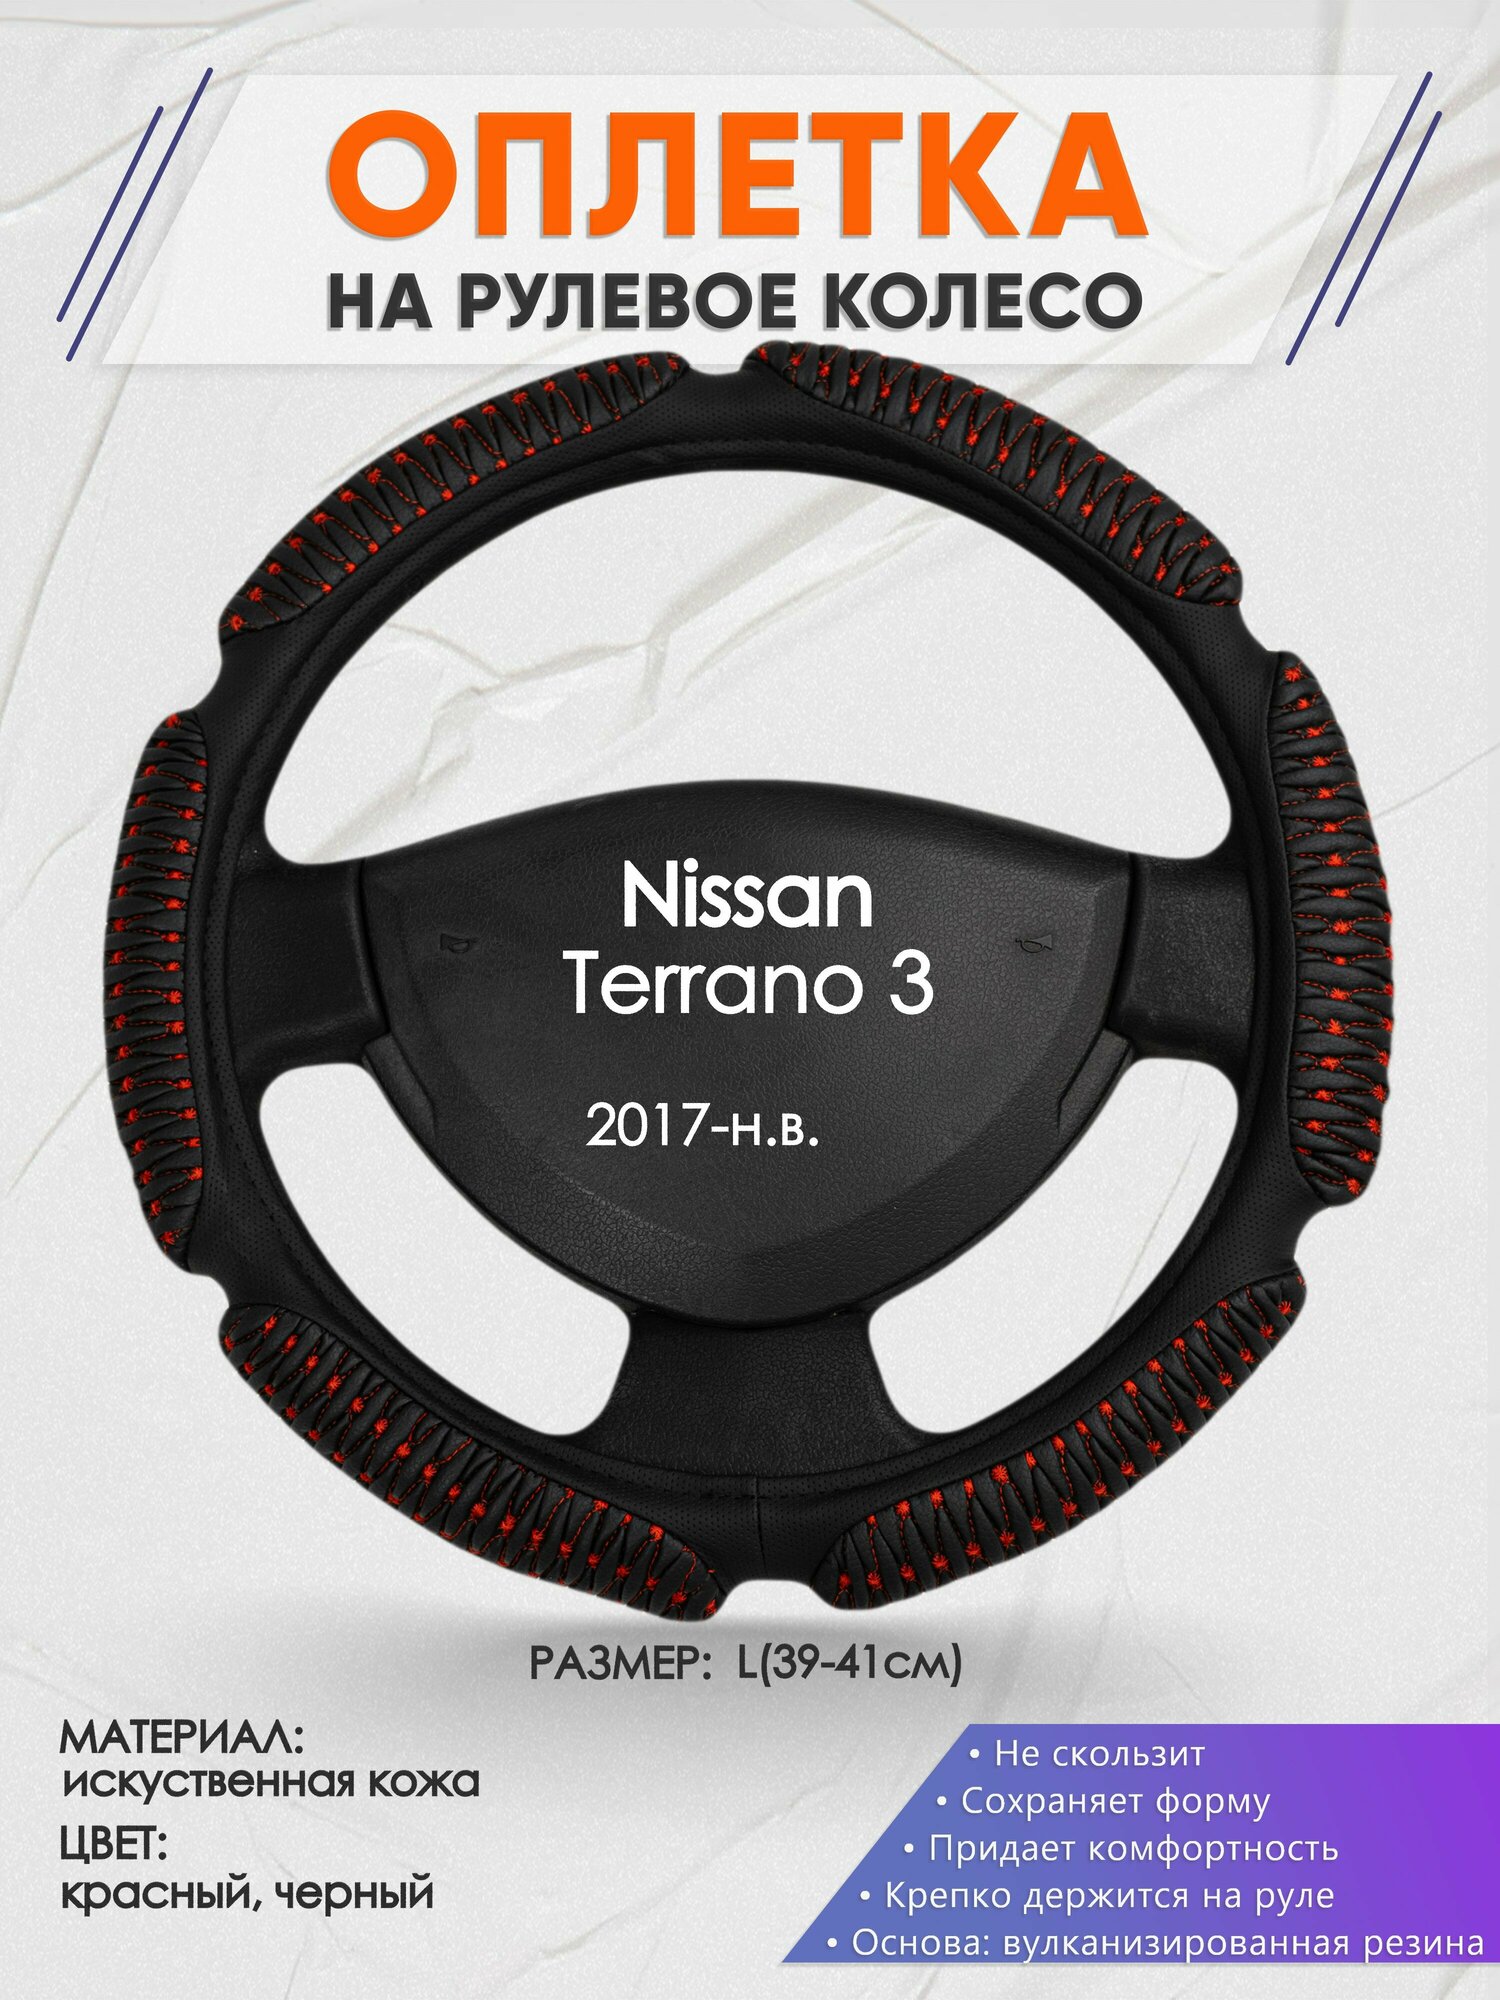 Оплетка на руль для Nissan Terrano 3(Ниссан Террано 3) 2017-н. в, L(39-41см), Искусственная кожа 01